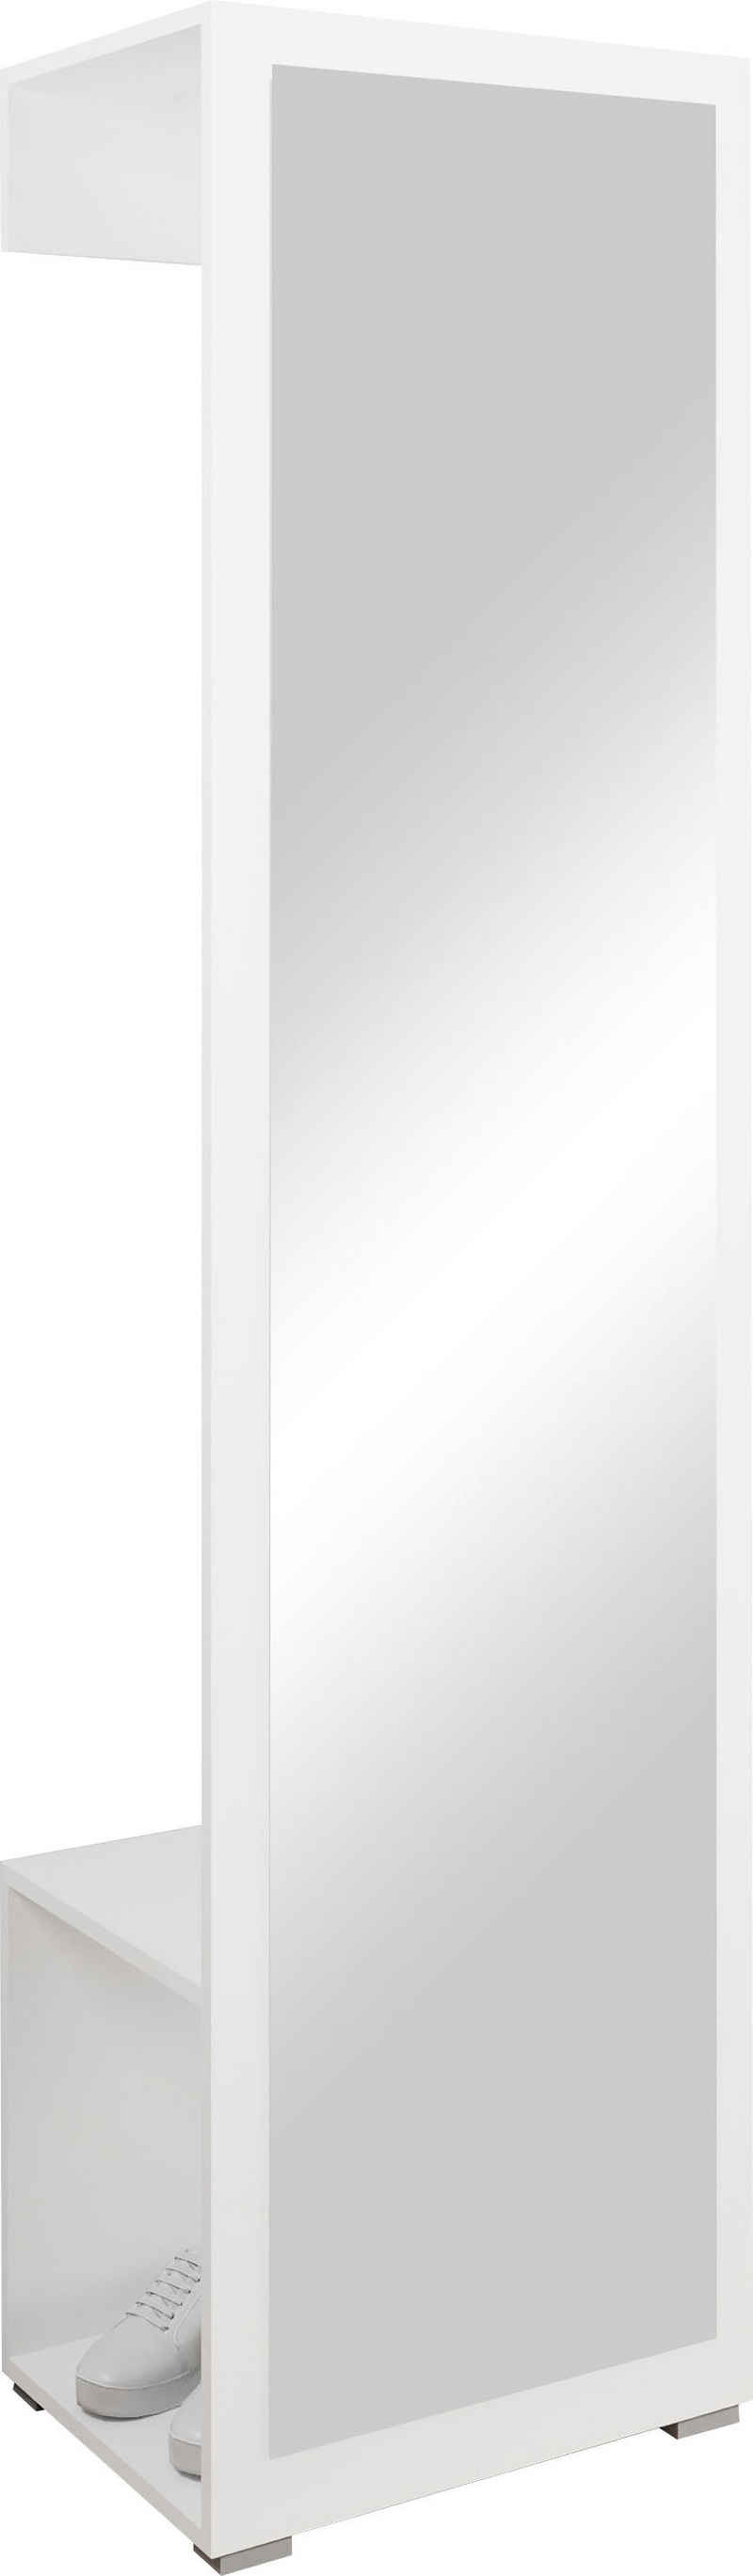 INOSIGN Spiegelschrank »Paris« mit 1 Kleiderstange und 1 Frontspiegel (Höhe 190 cm)